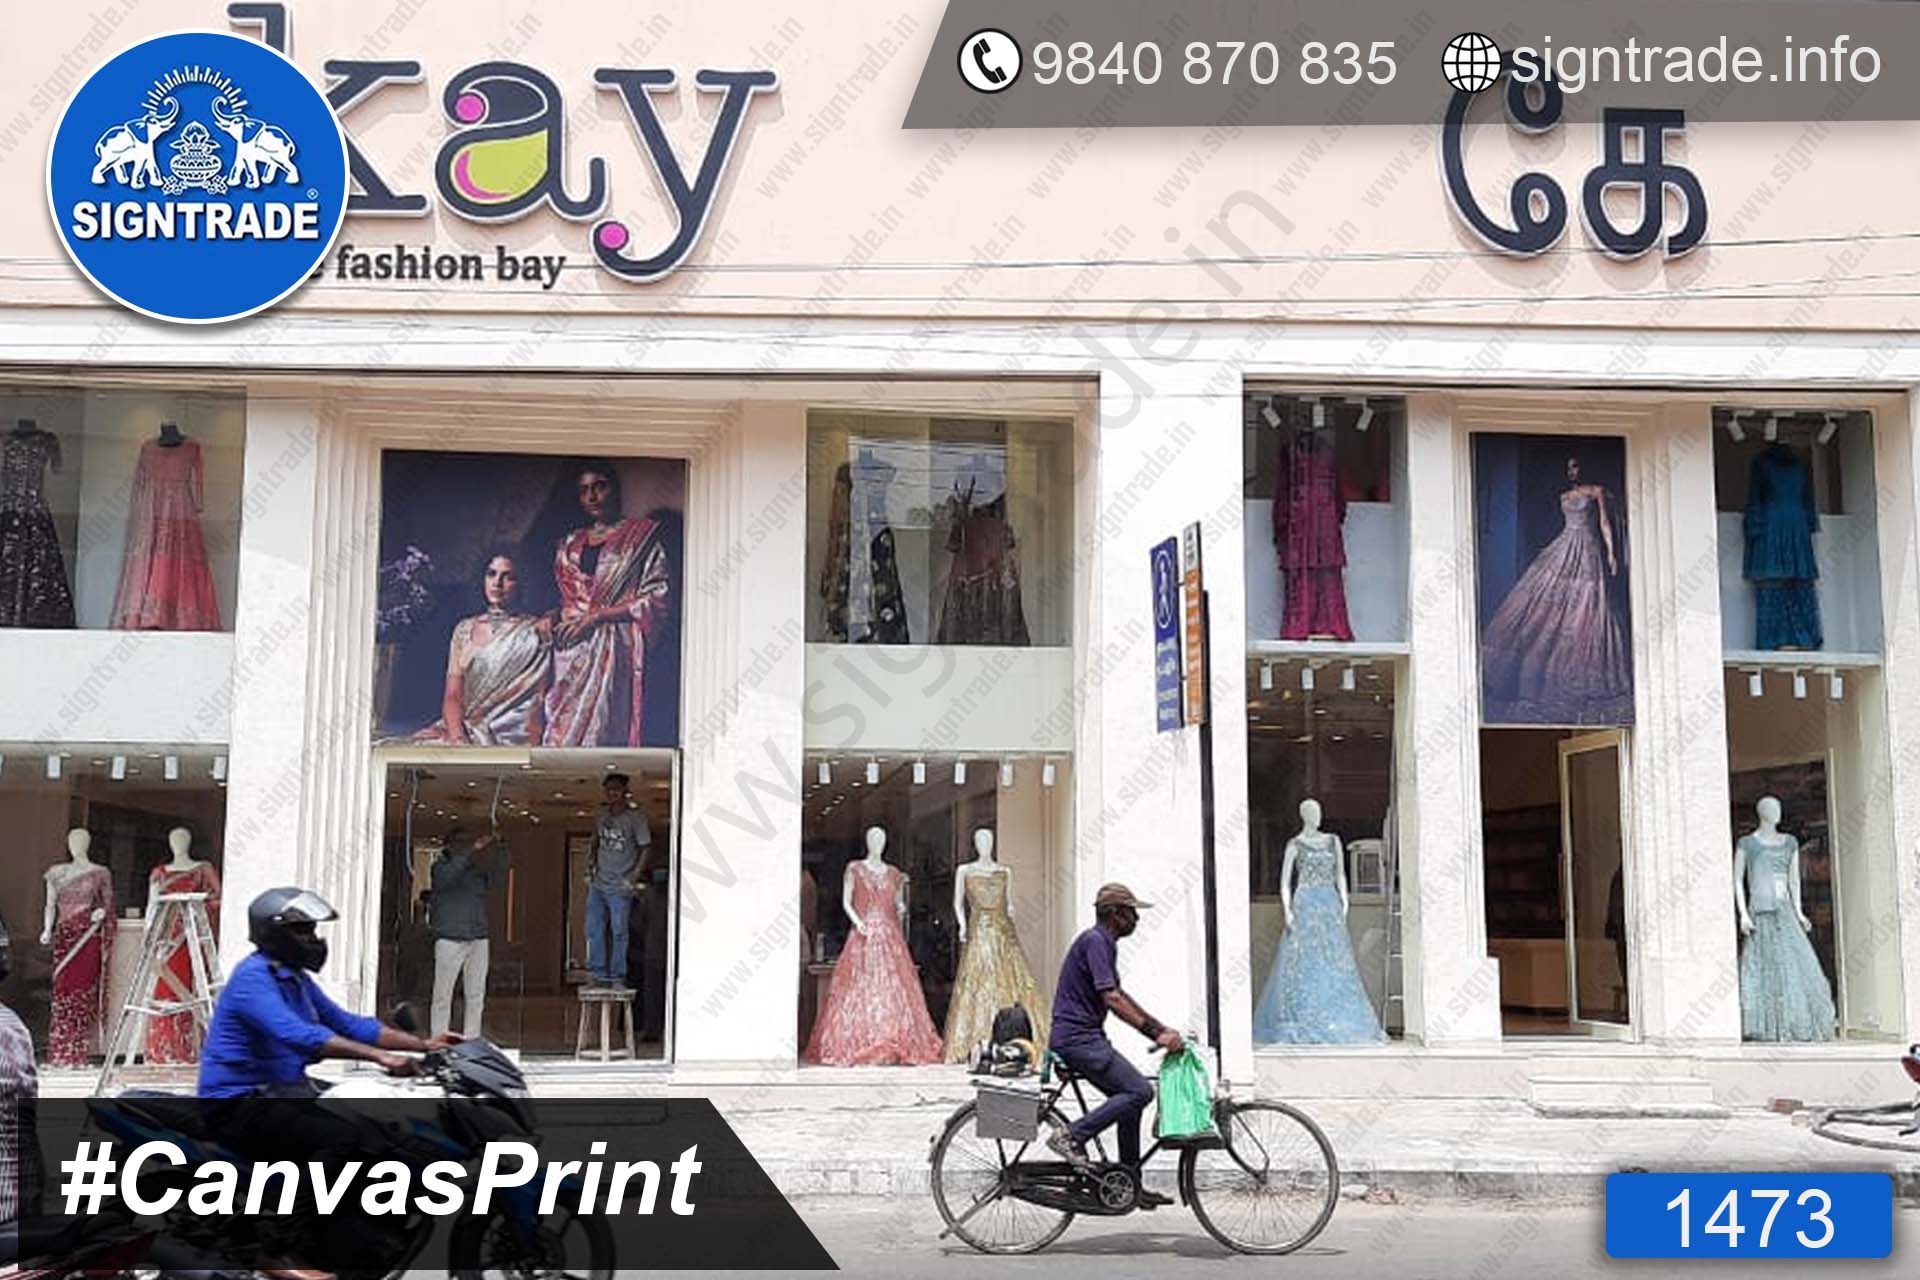 Kay The Fashion Bay - Canvas Print, SIGNTRADE - Digital Printing Service in Chennai